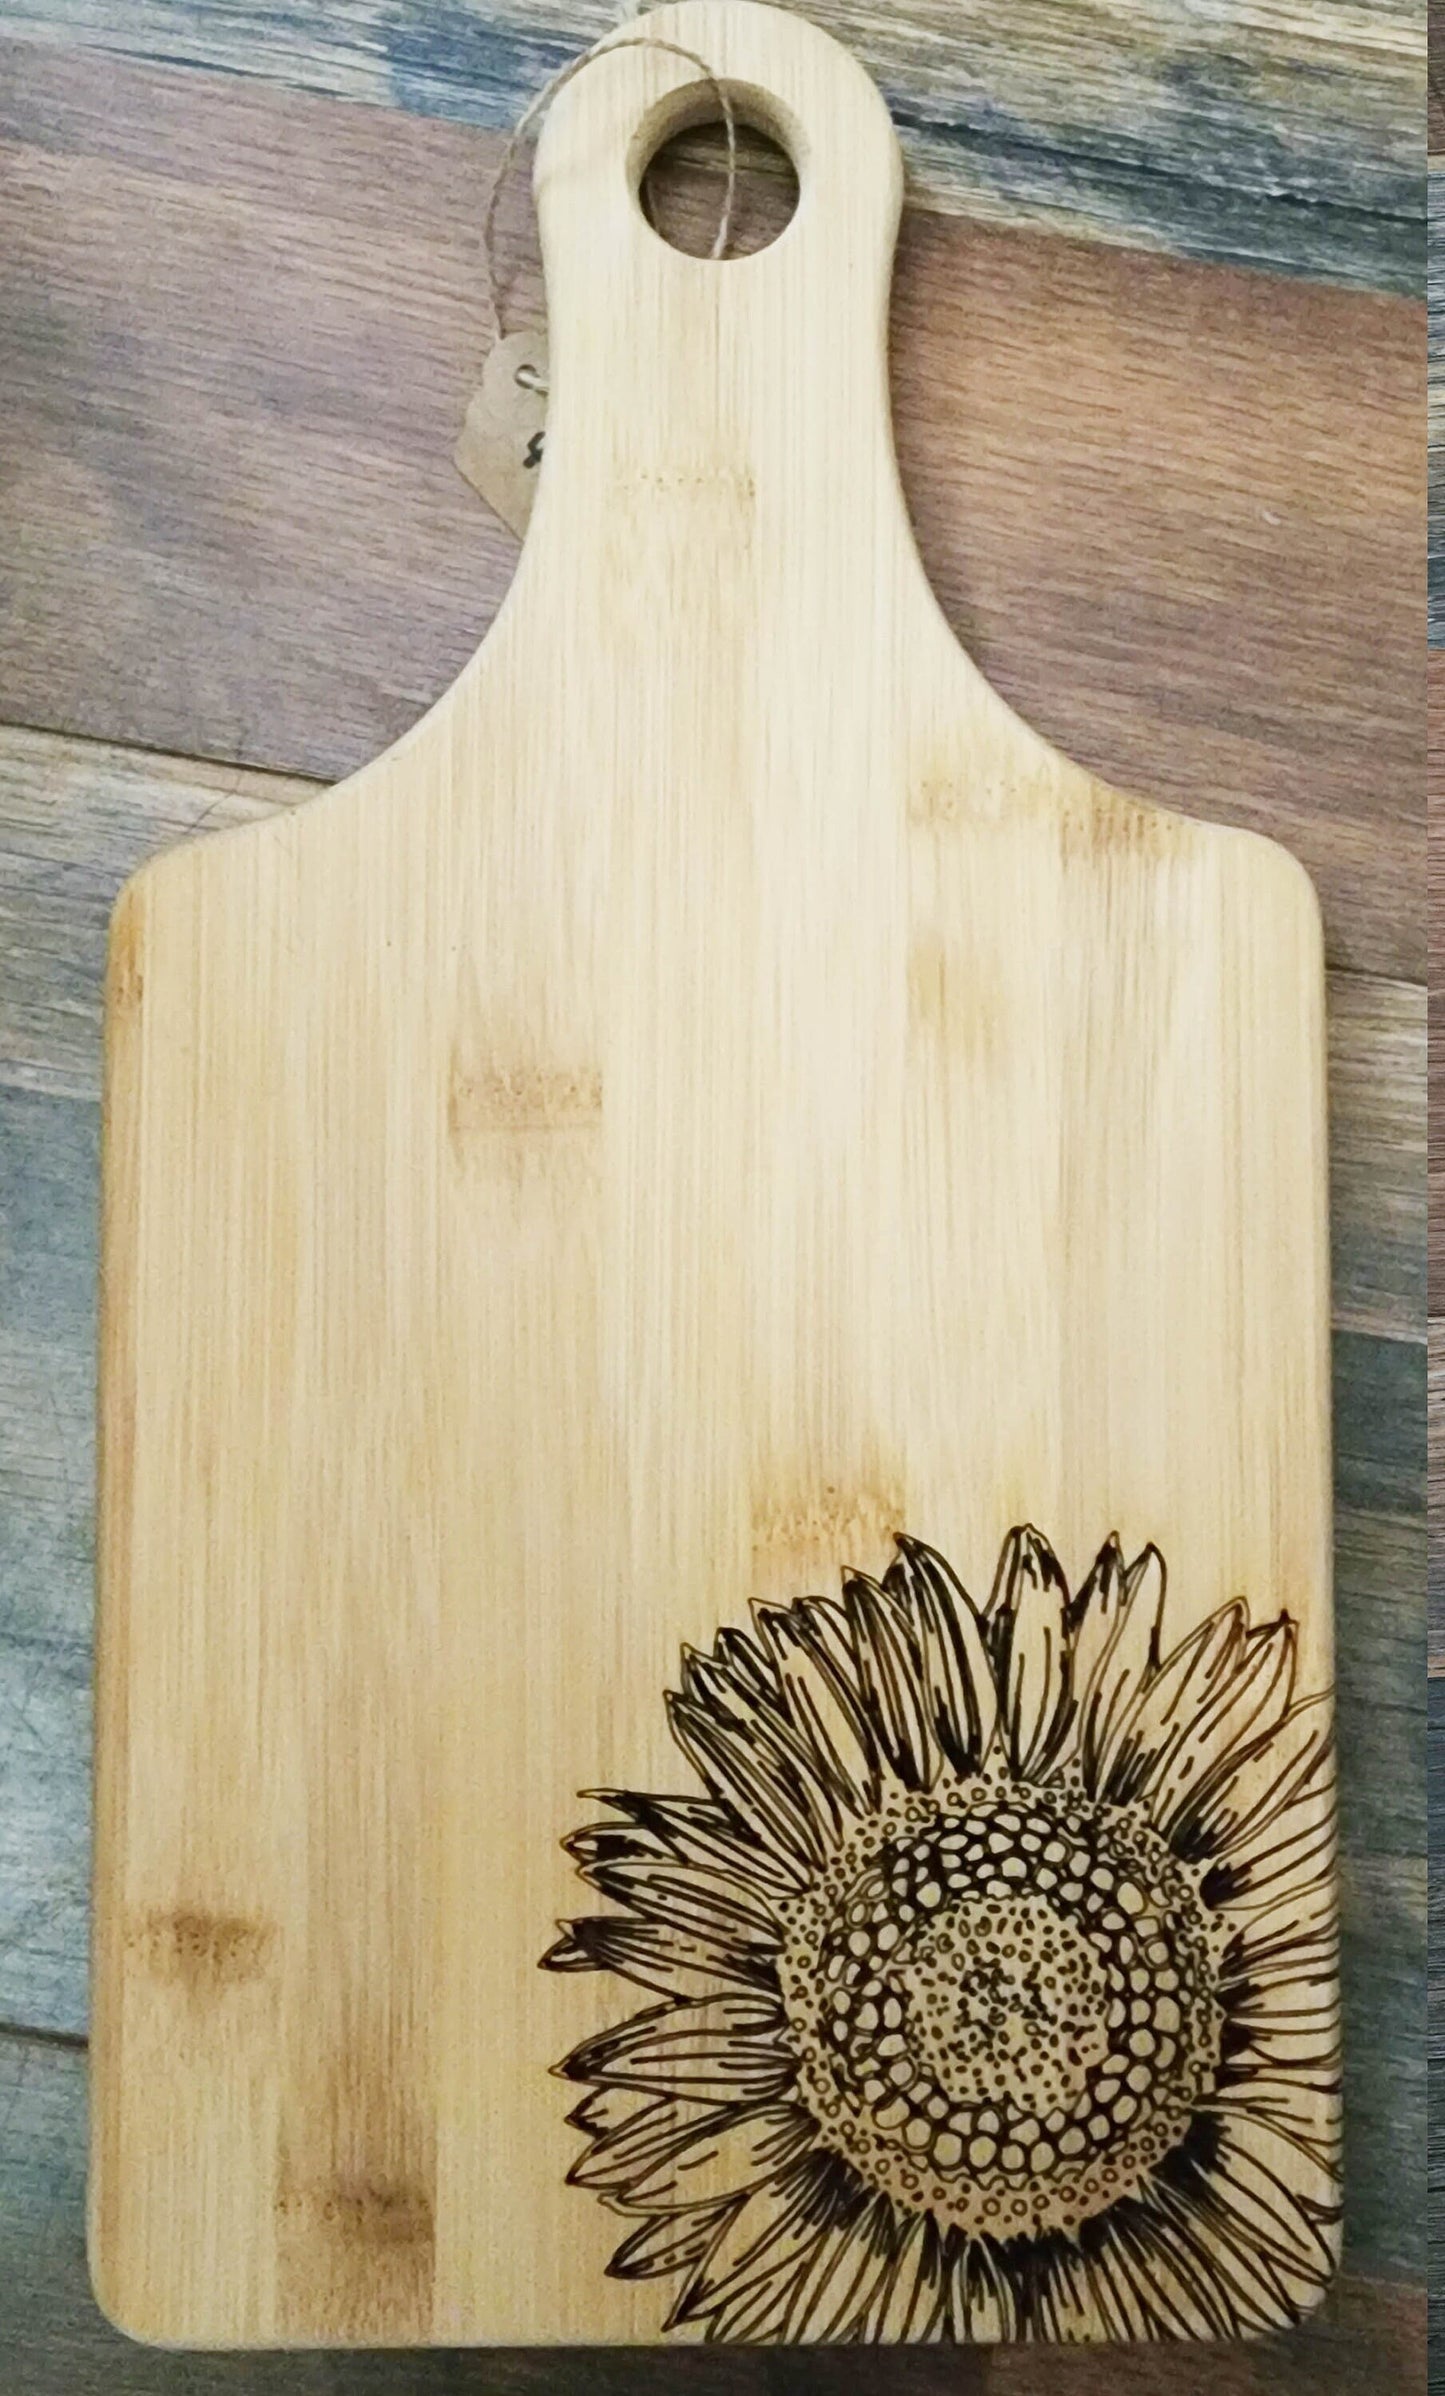 Sunflower bamboo cutting board